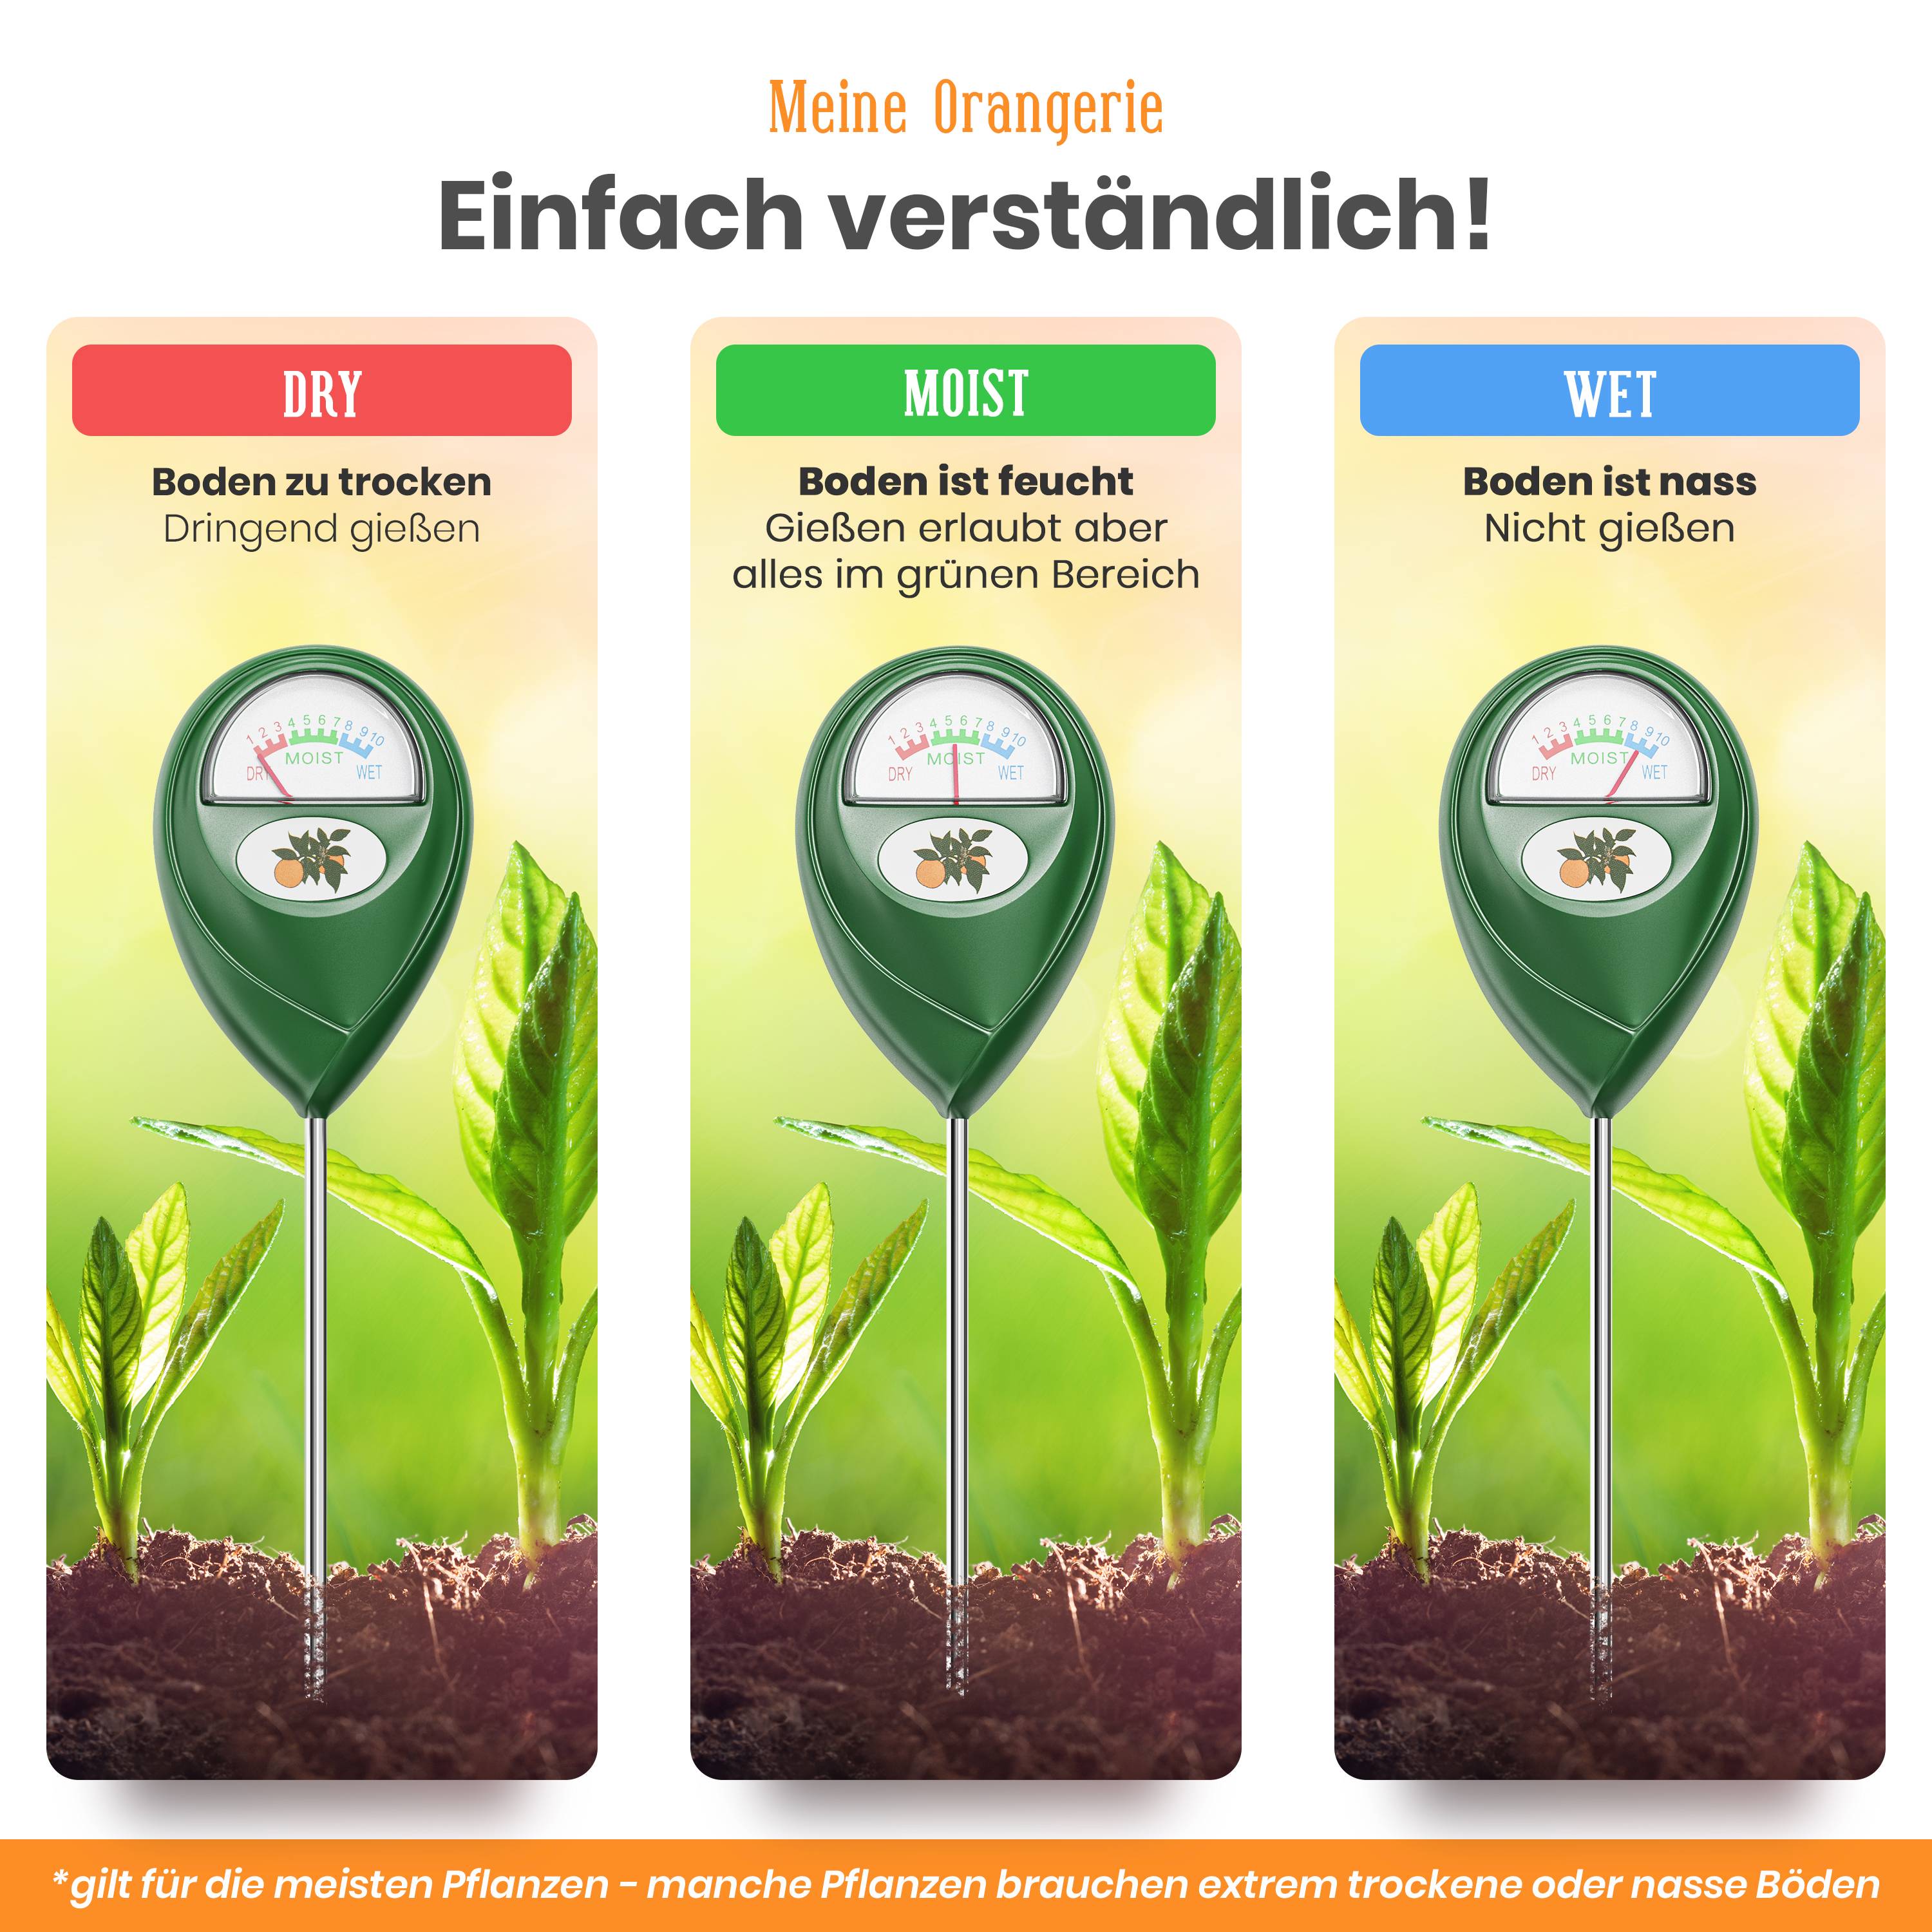 Feuchtigkeitsmesser für Pflanzen - Boden Feuchtigkeitsmessgerät